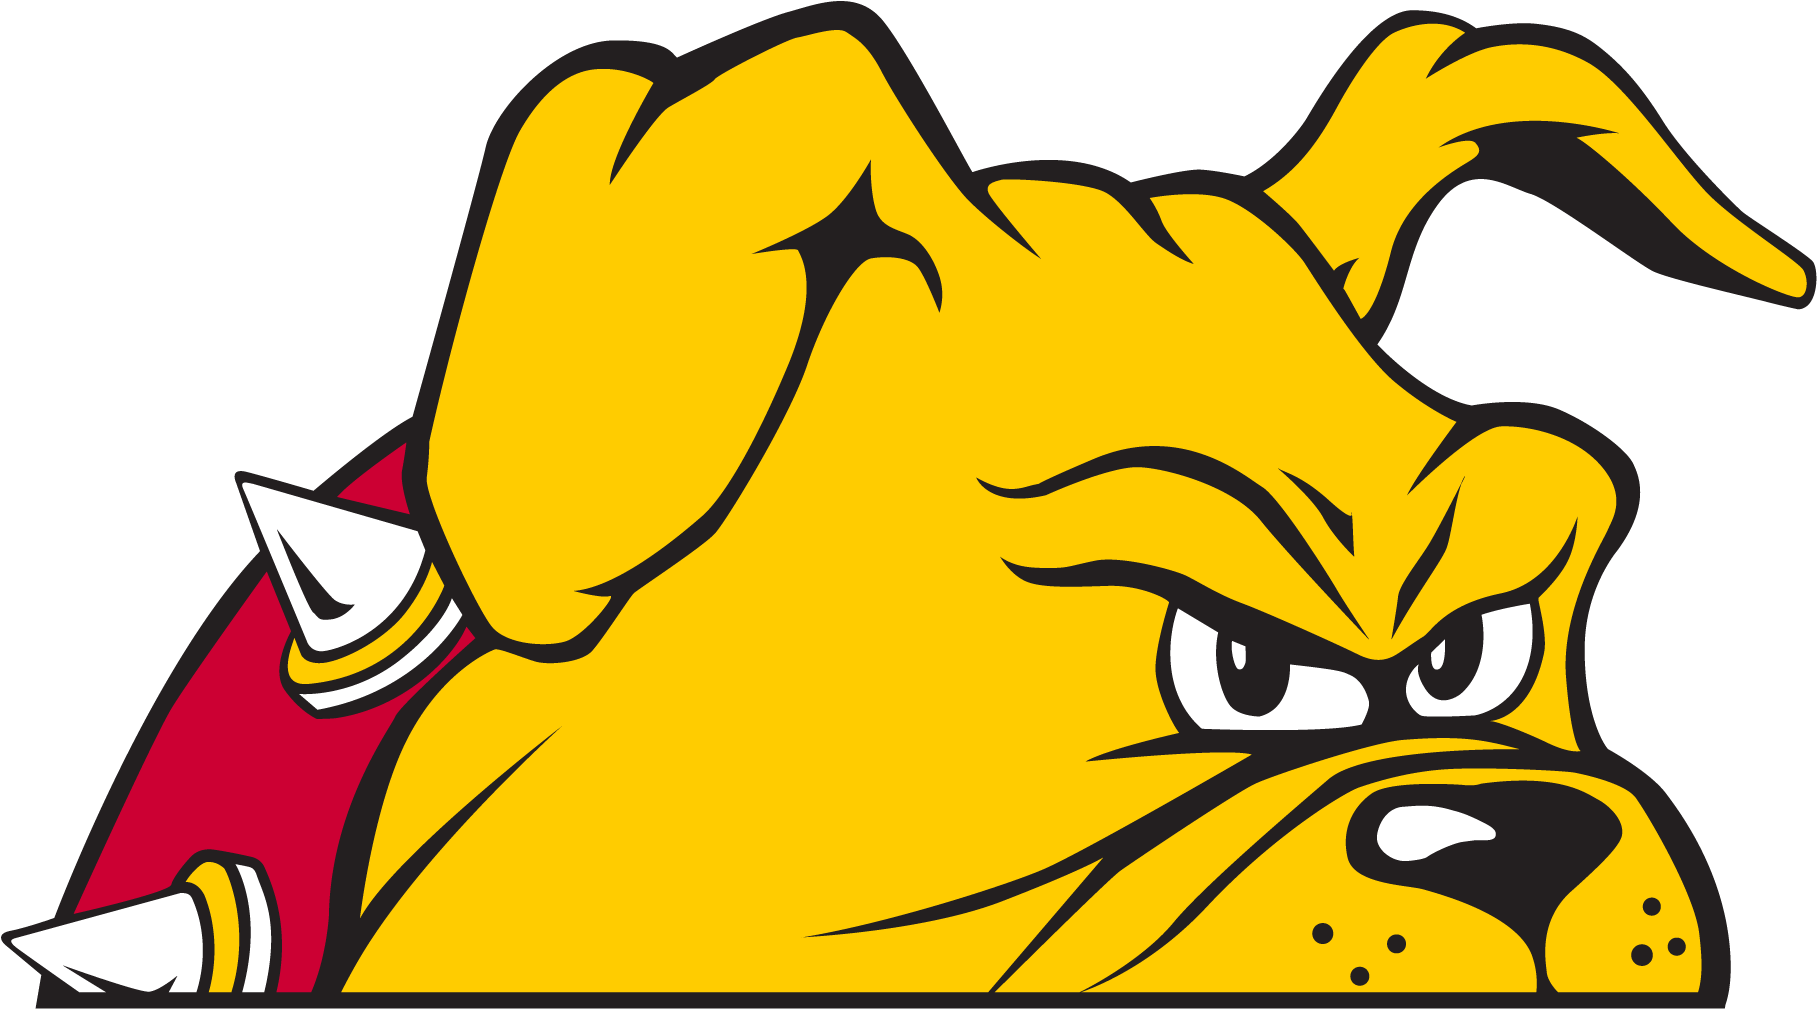 Angry Bulldog Mascot Graphic PNG image